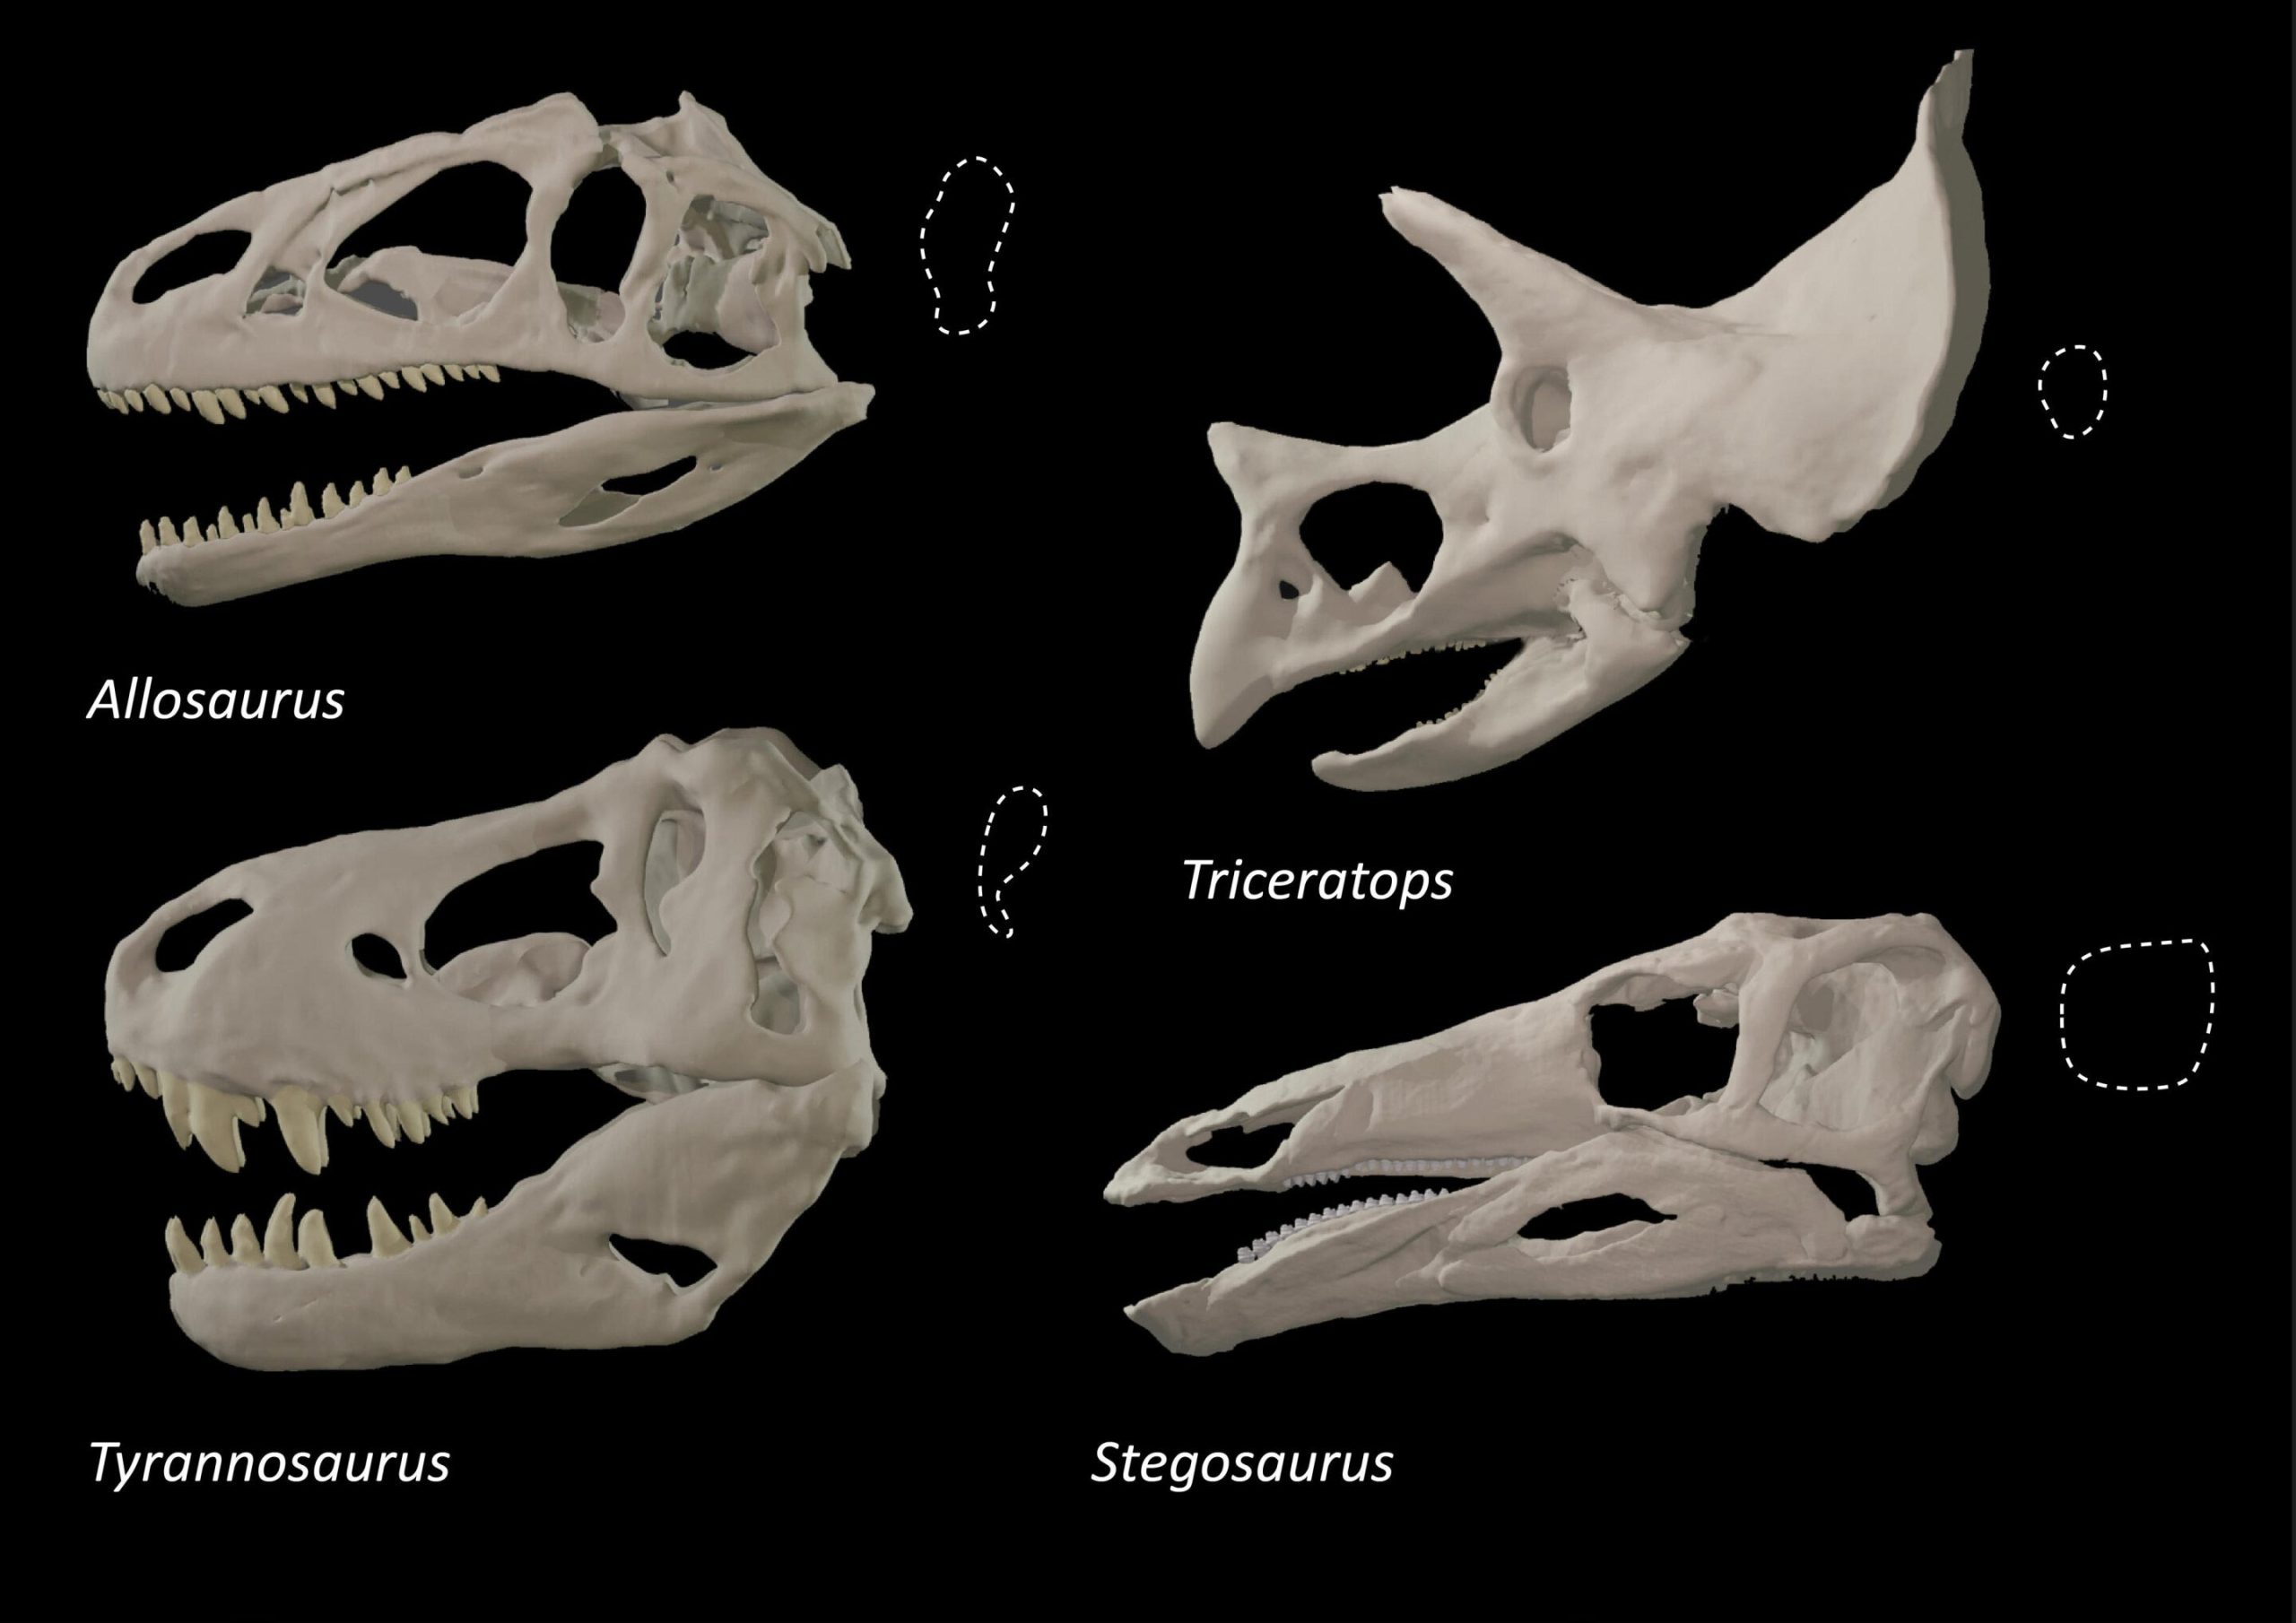 霸王龙等大型捕食者恐龙进化出不同的眼窝形状以获得更强咬伤力